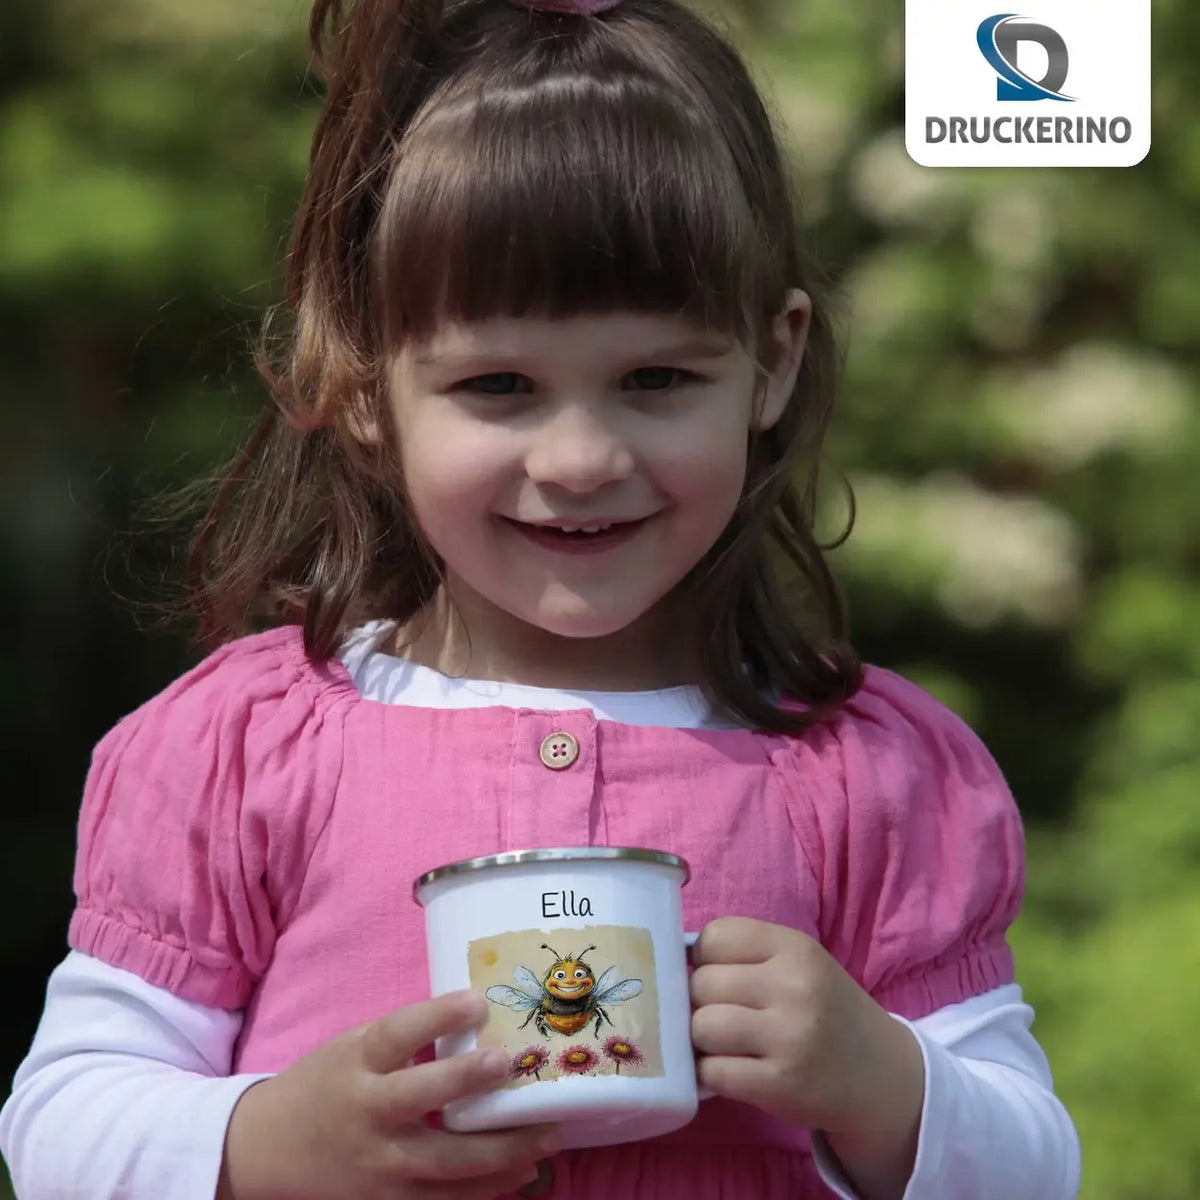 Zauberbiene Emaille Tasse für Kinder personalisiert Emailletasse Druckerino   